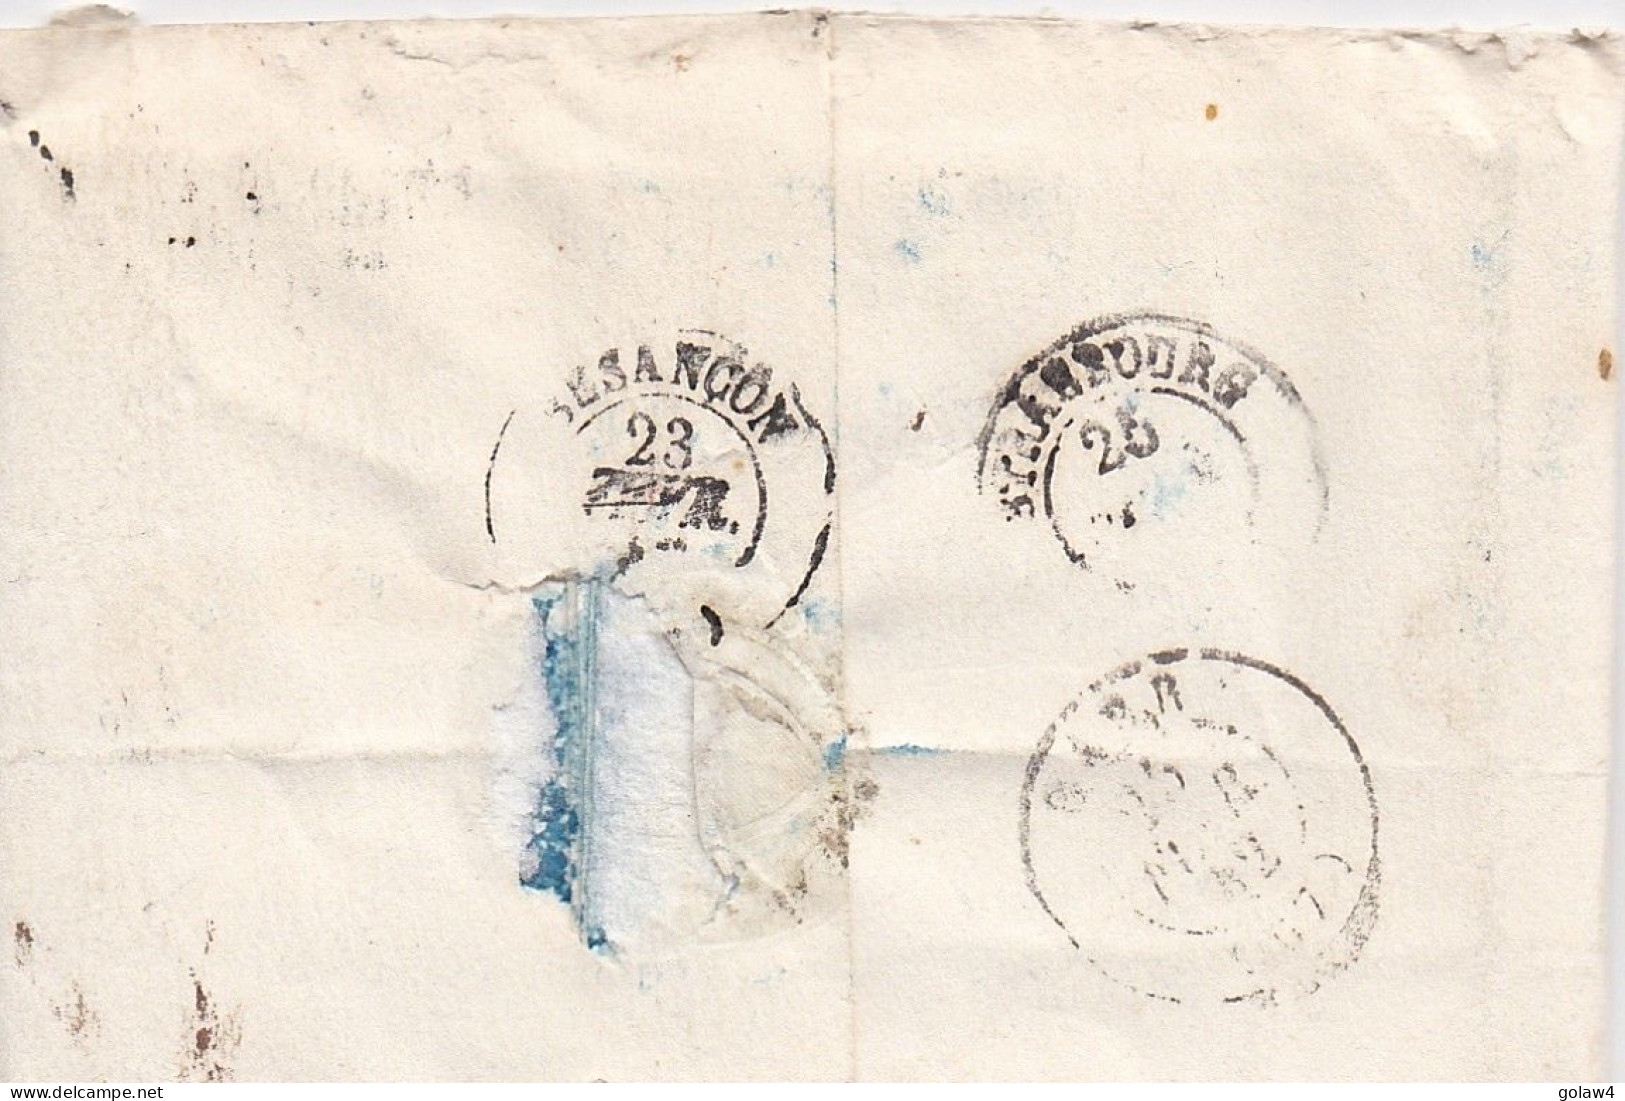 35059# LETTRE Obl LUTRY 22 Février 1842 Pour BARR BAS RHIN ALSACE MARQUES D'ECHANGE Via BESANCON DOUBS STRASBOURG - ...-1845 Préphilatélie